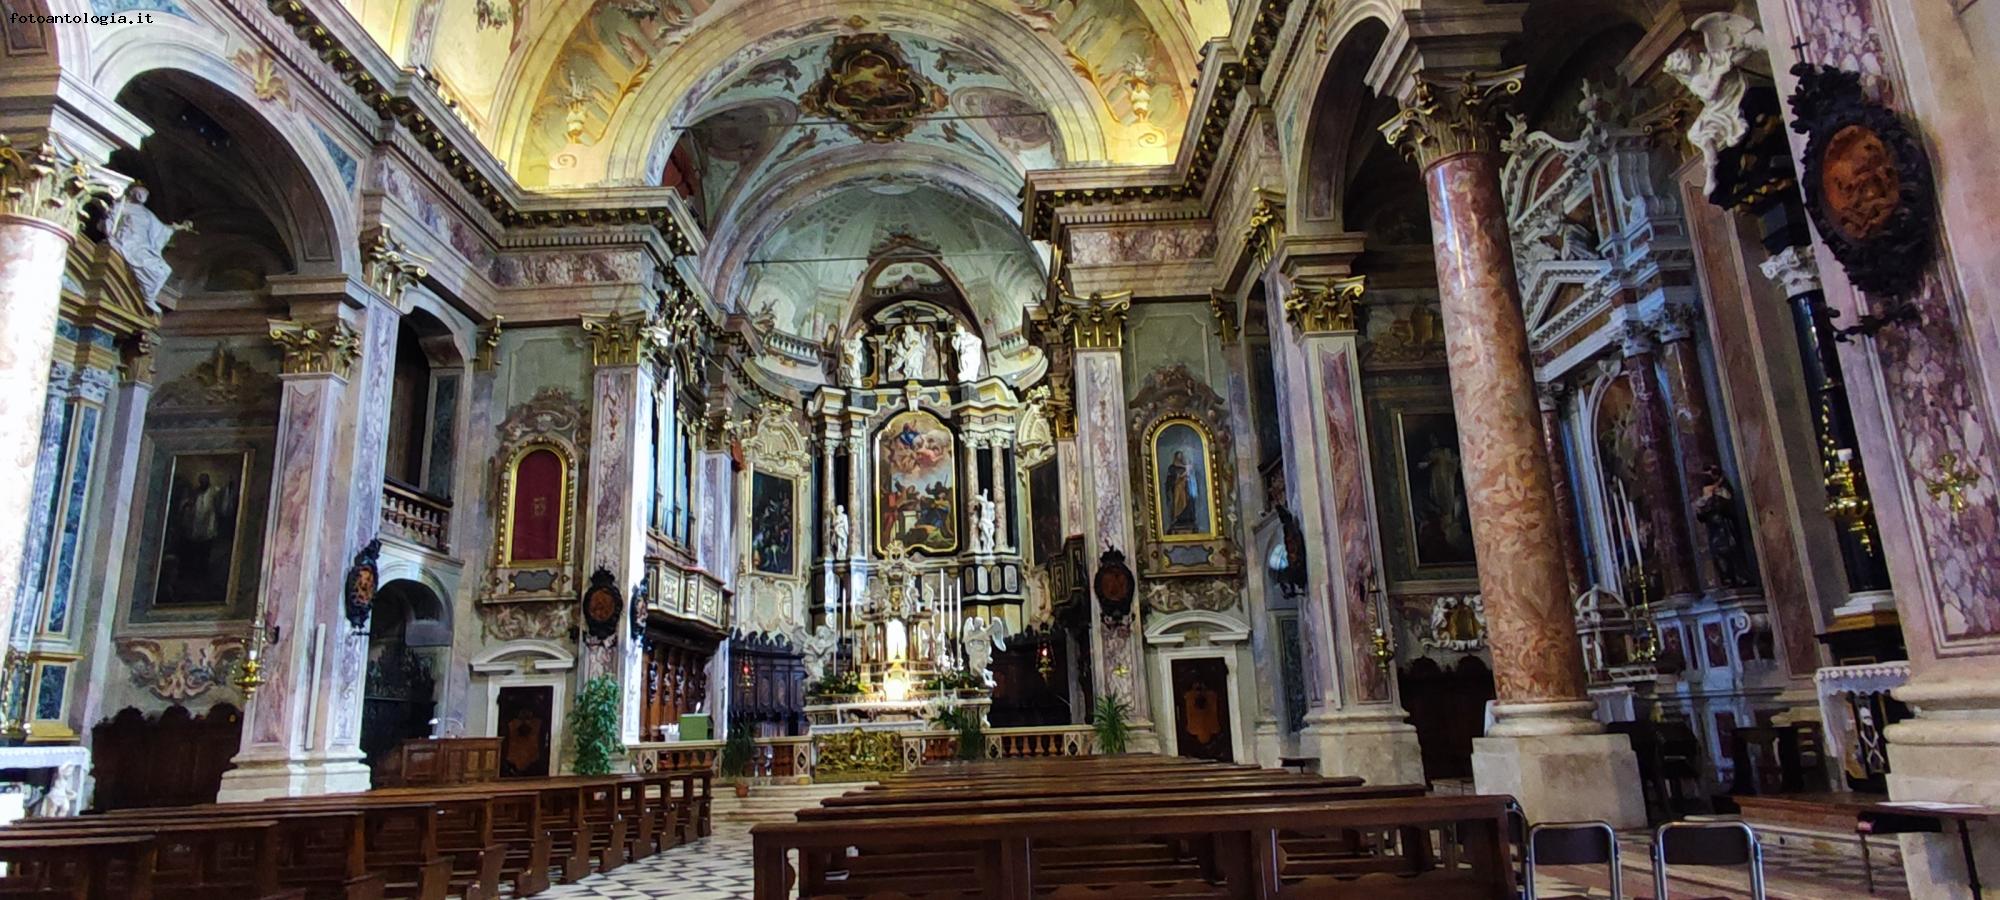 Clusone - basilica di Santa Maria Assunta e San Giovanni Battista